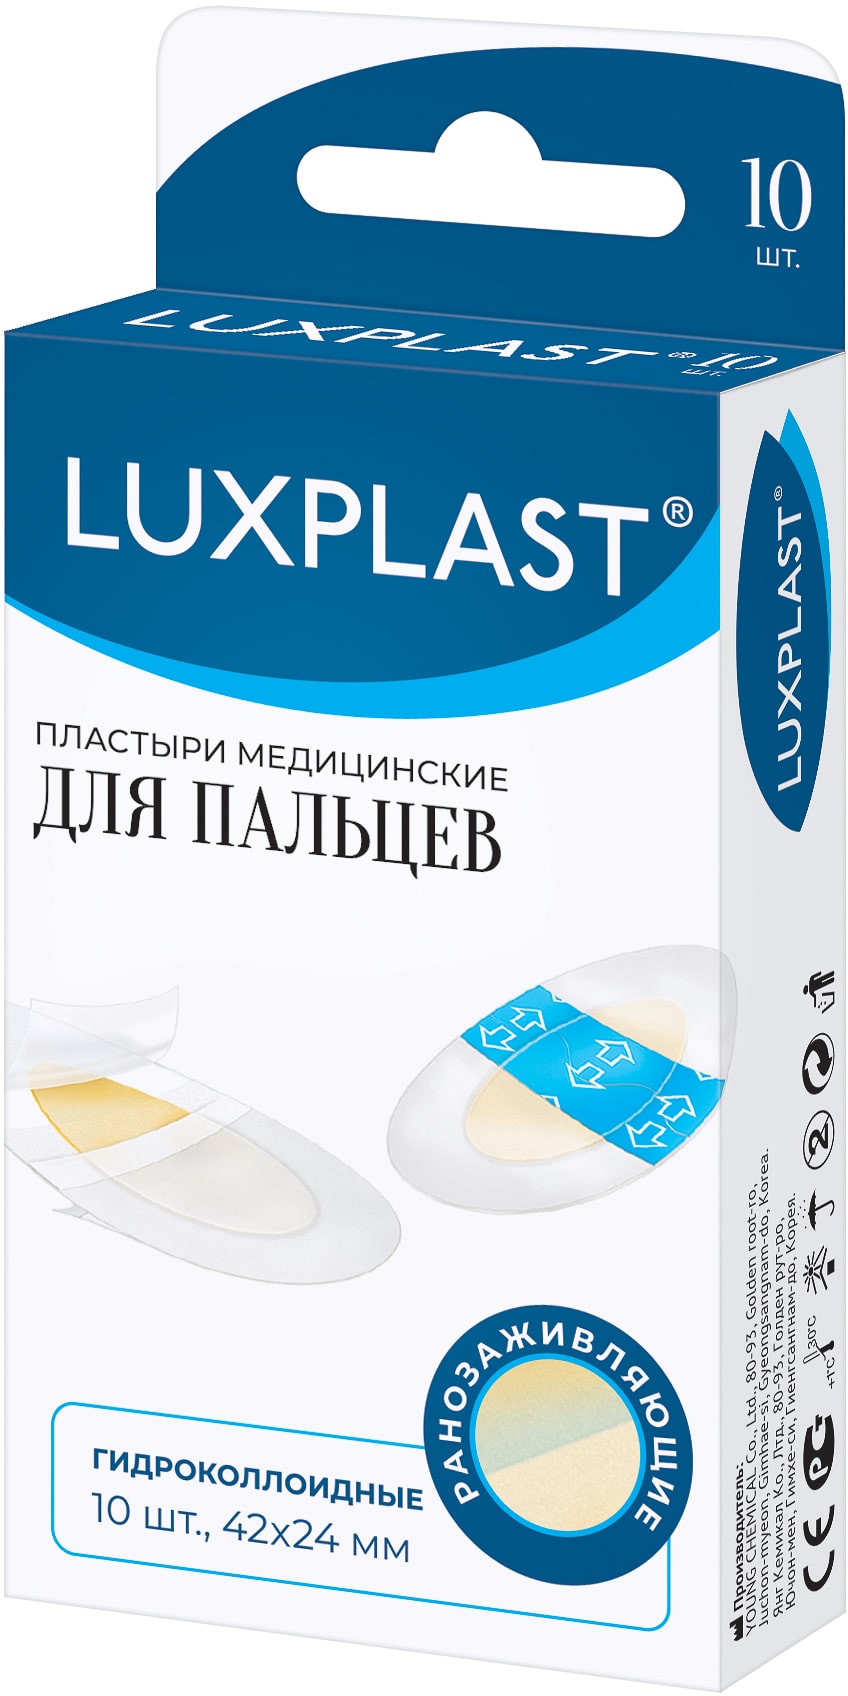 Luxplast Пластыри медицинские гидроколлоидные для пальцев 42х24 мм, 10 шт (Luxplast, Пластырь)